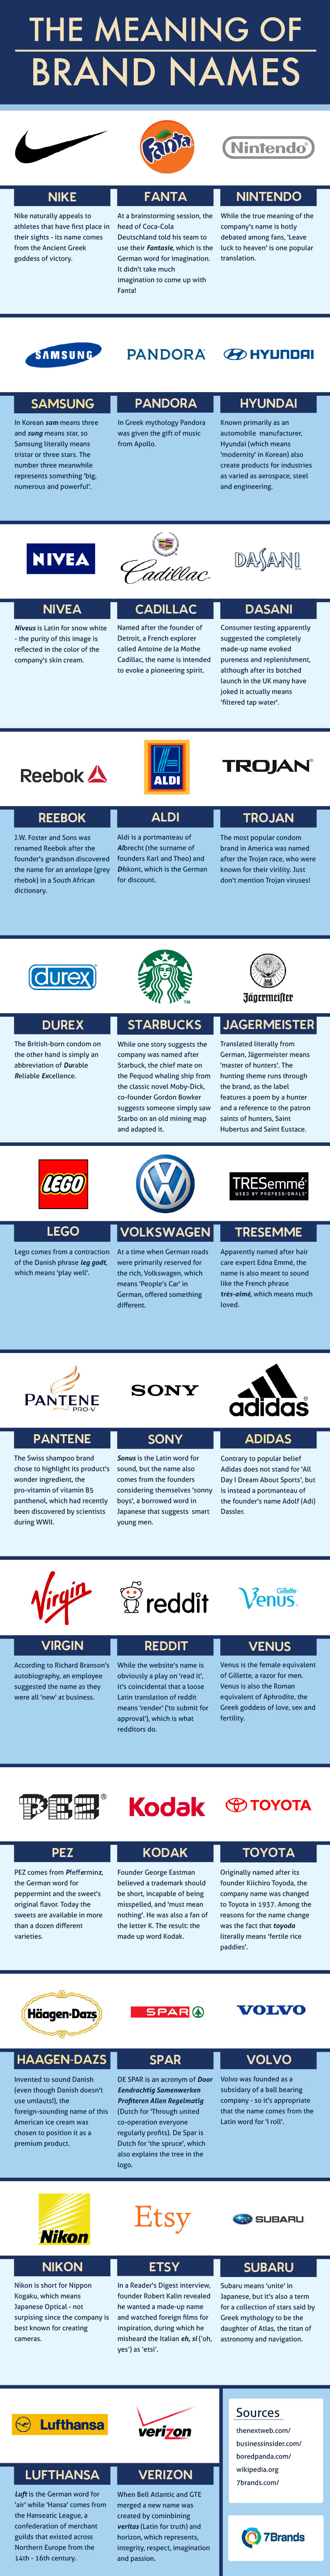 El significado del nombre de las marcas | Infografía